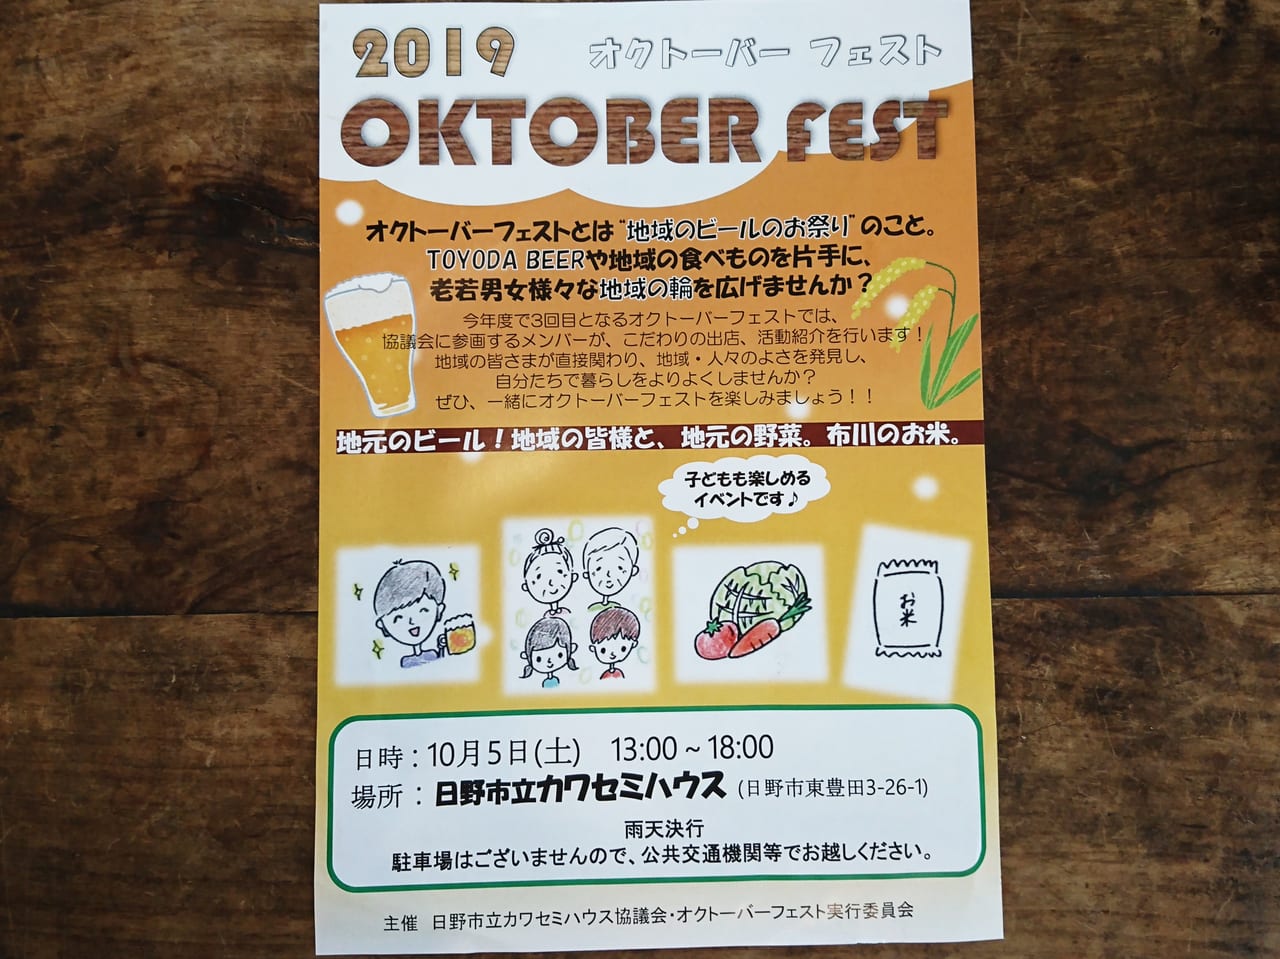 2019年10月5日にカワセミハウスで開催される「オクトーバーフェスト」のチラシ